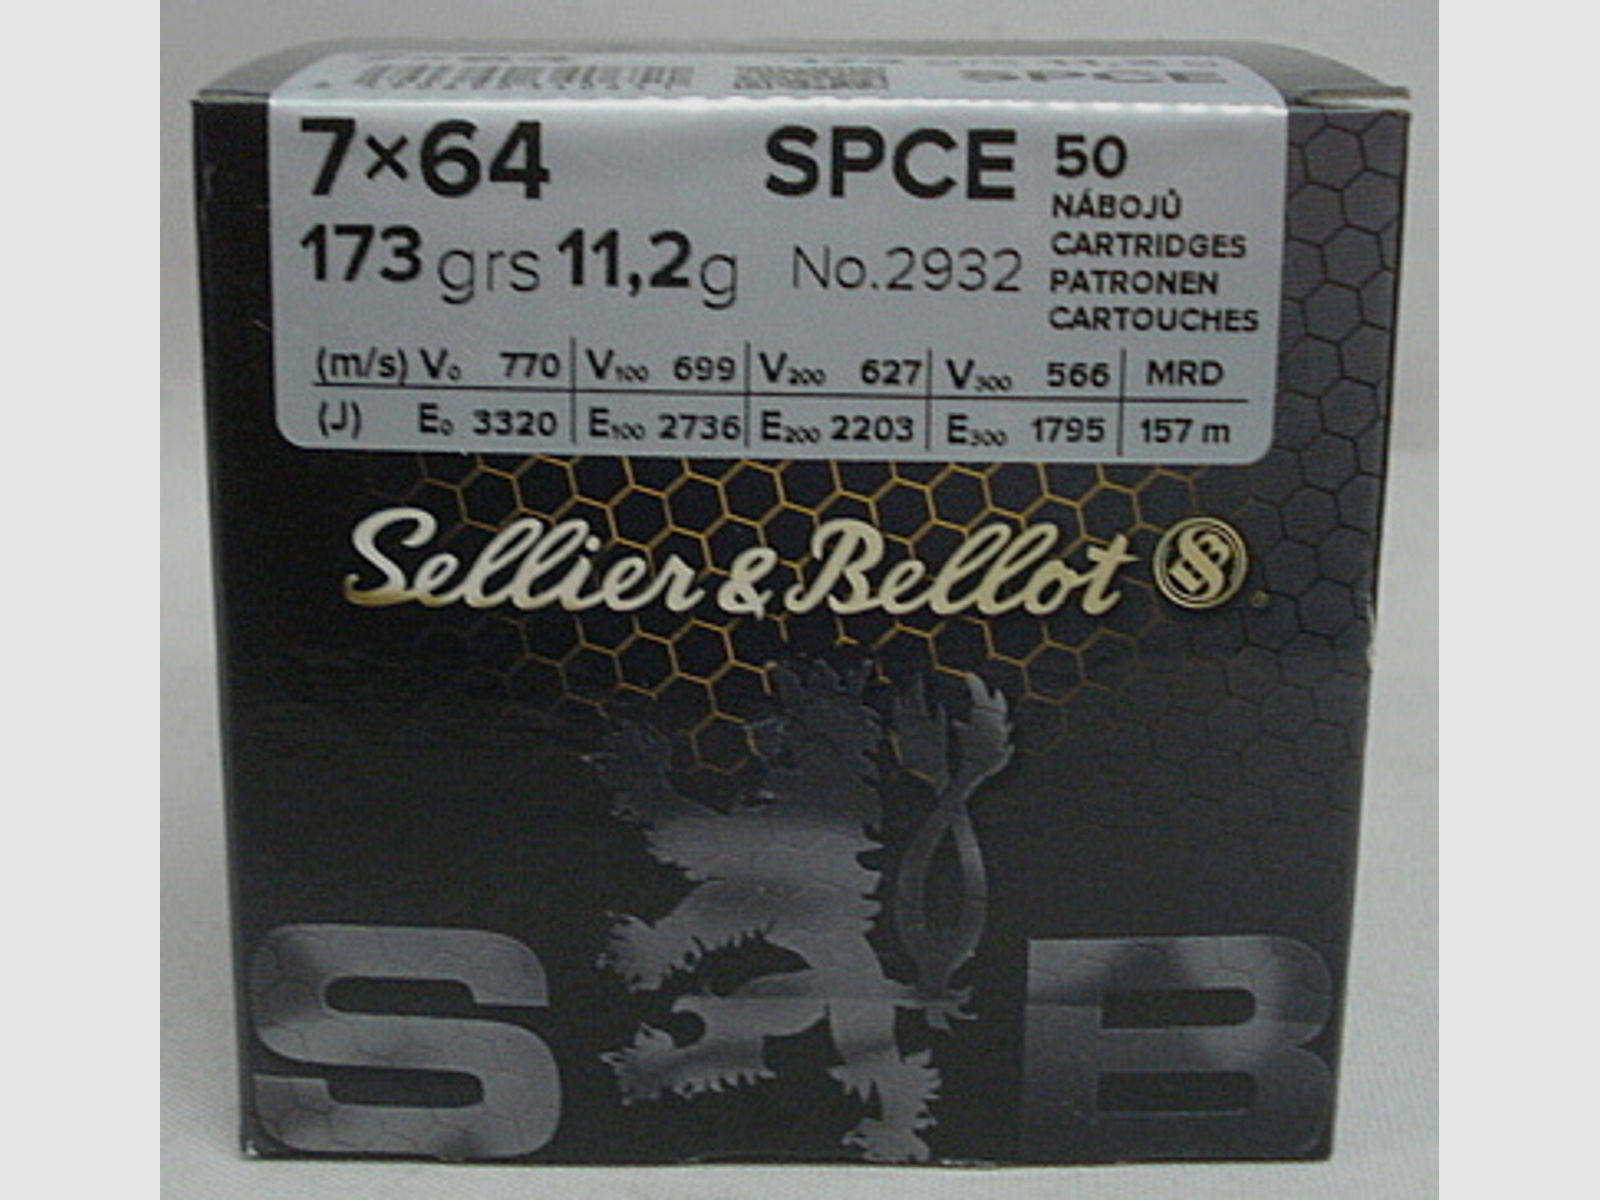 7x64 SPCE-Target - 11,2g/173gr (a50)